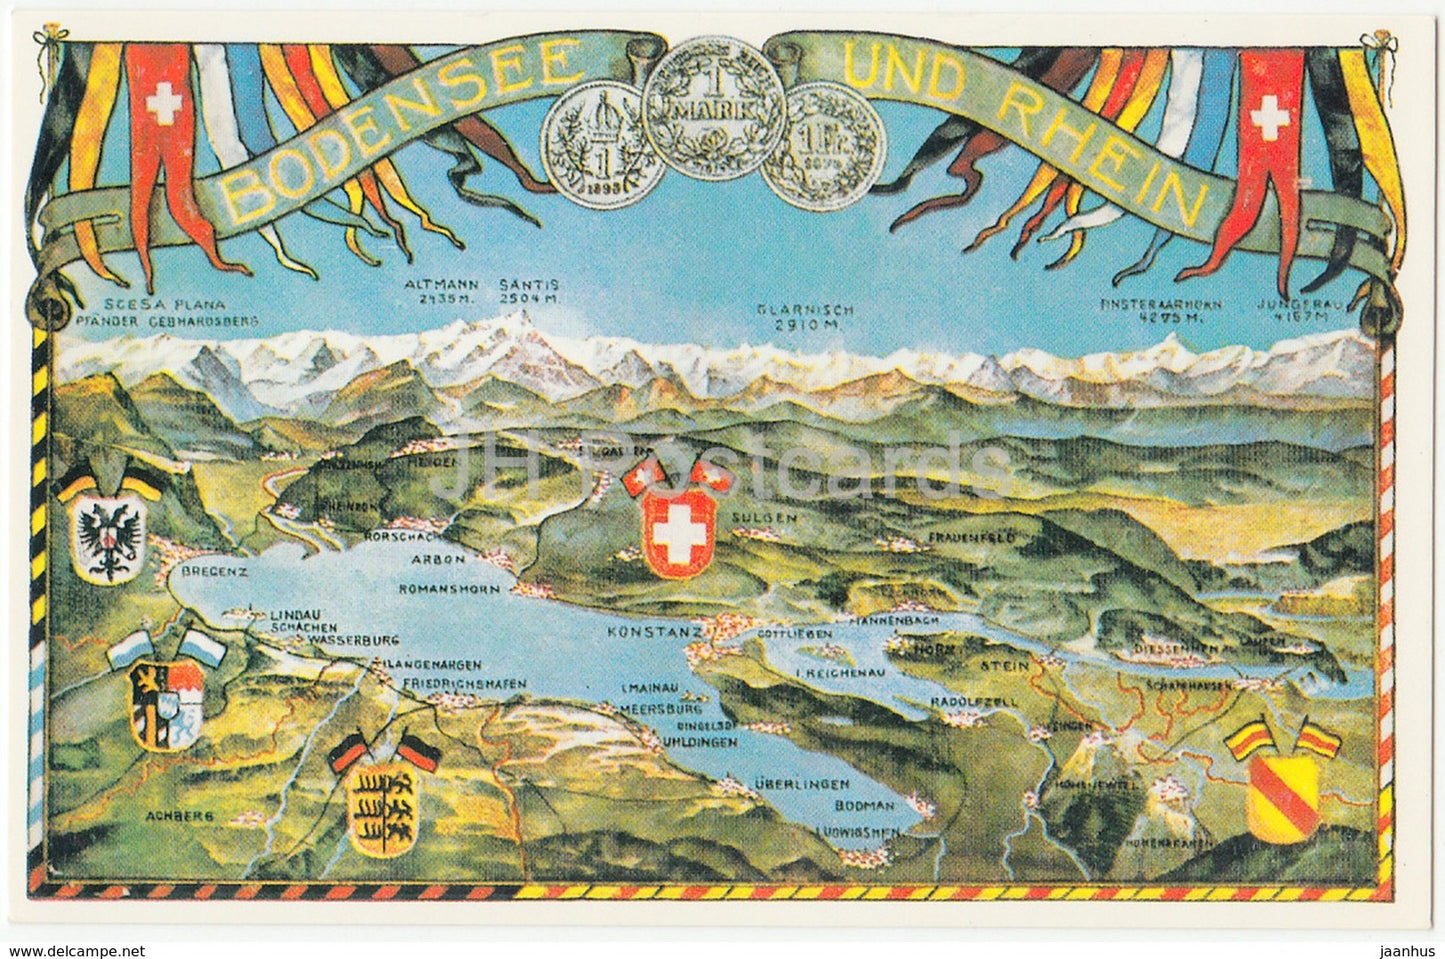 Bodensee und Rhein - Bodenseepanorama um 1910 - map - REPRODUCTION - Switzerland - unused - JH Postcards